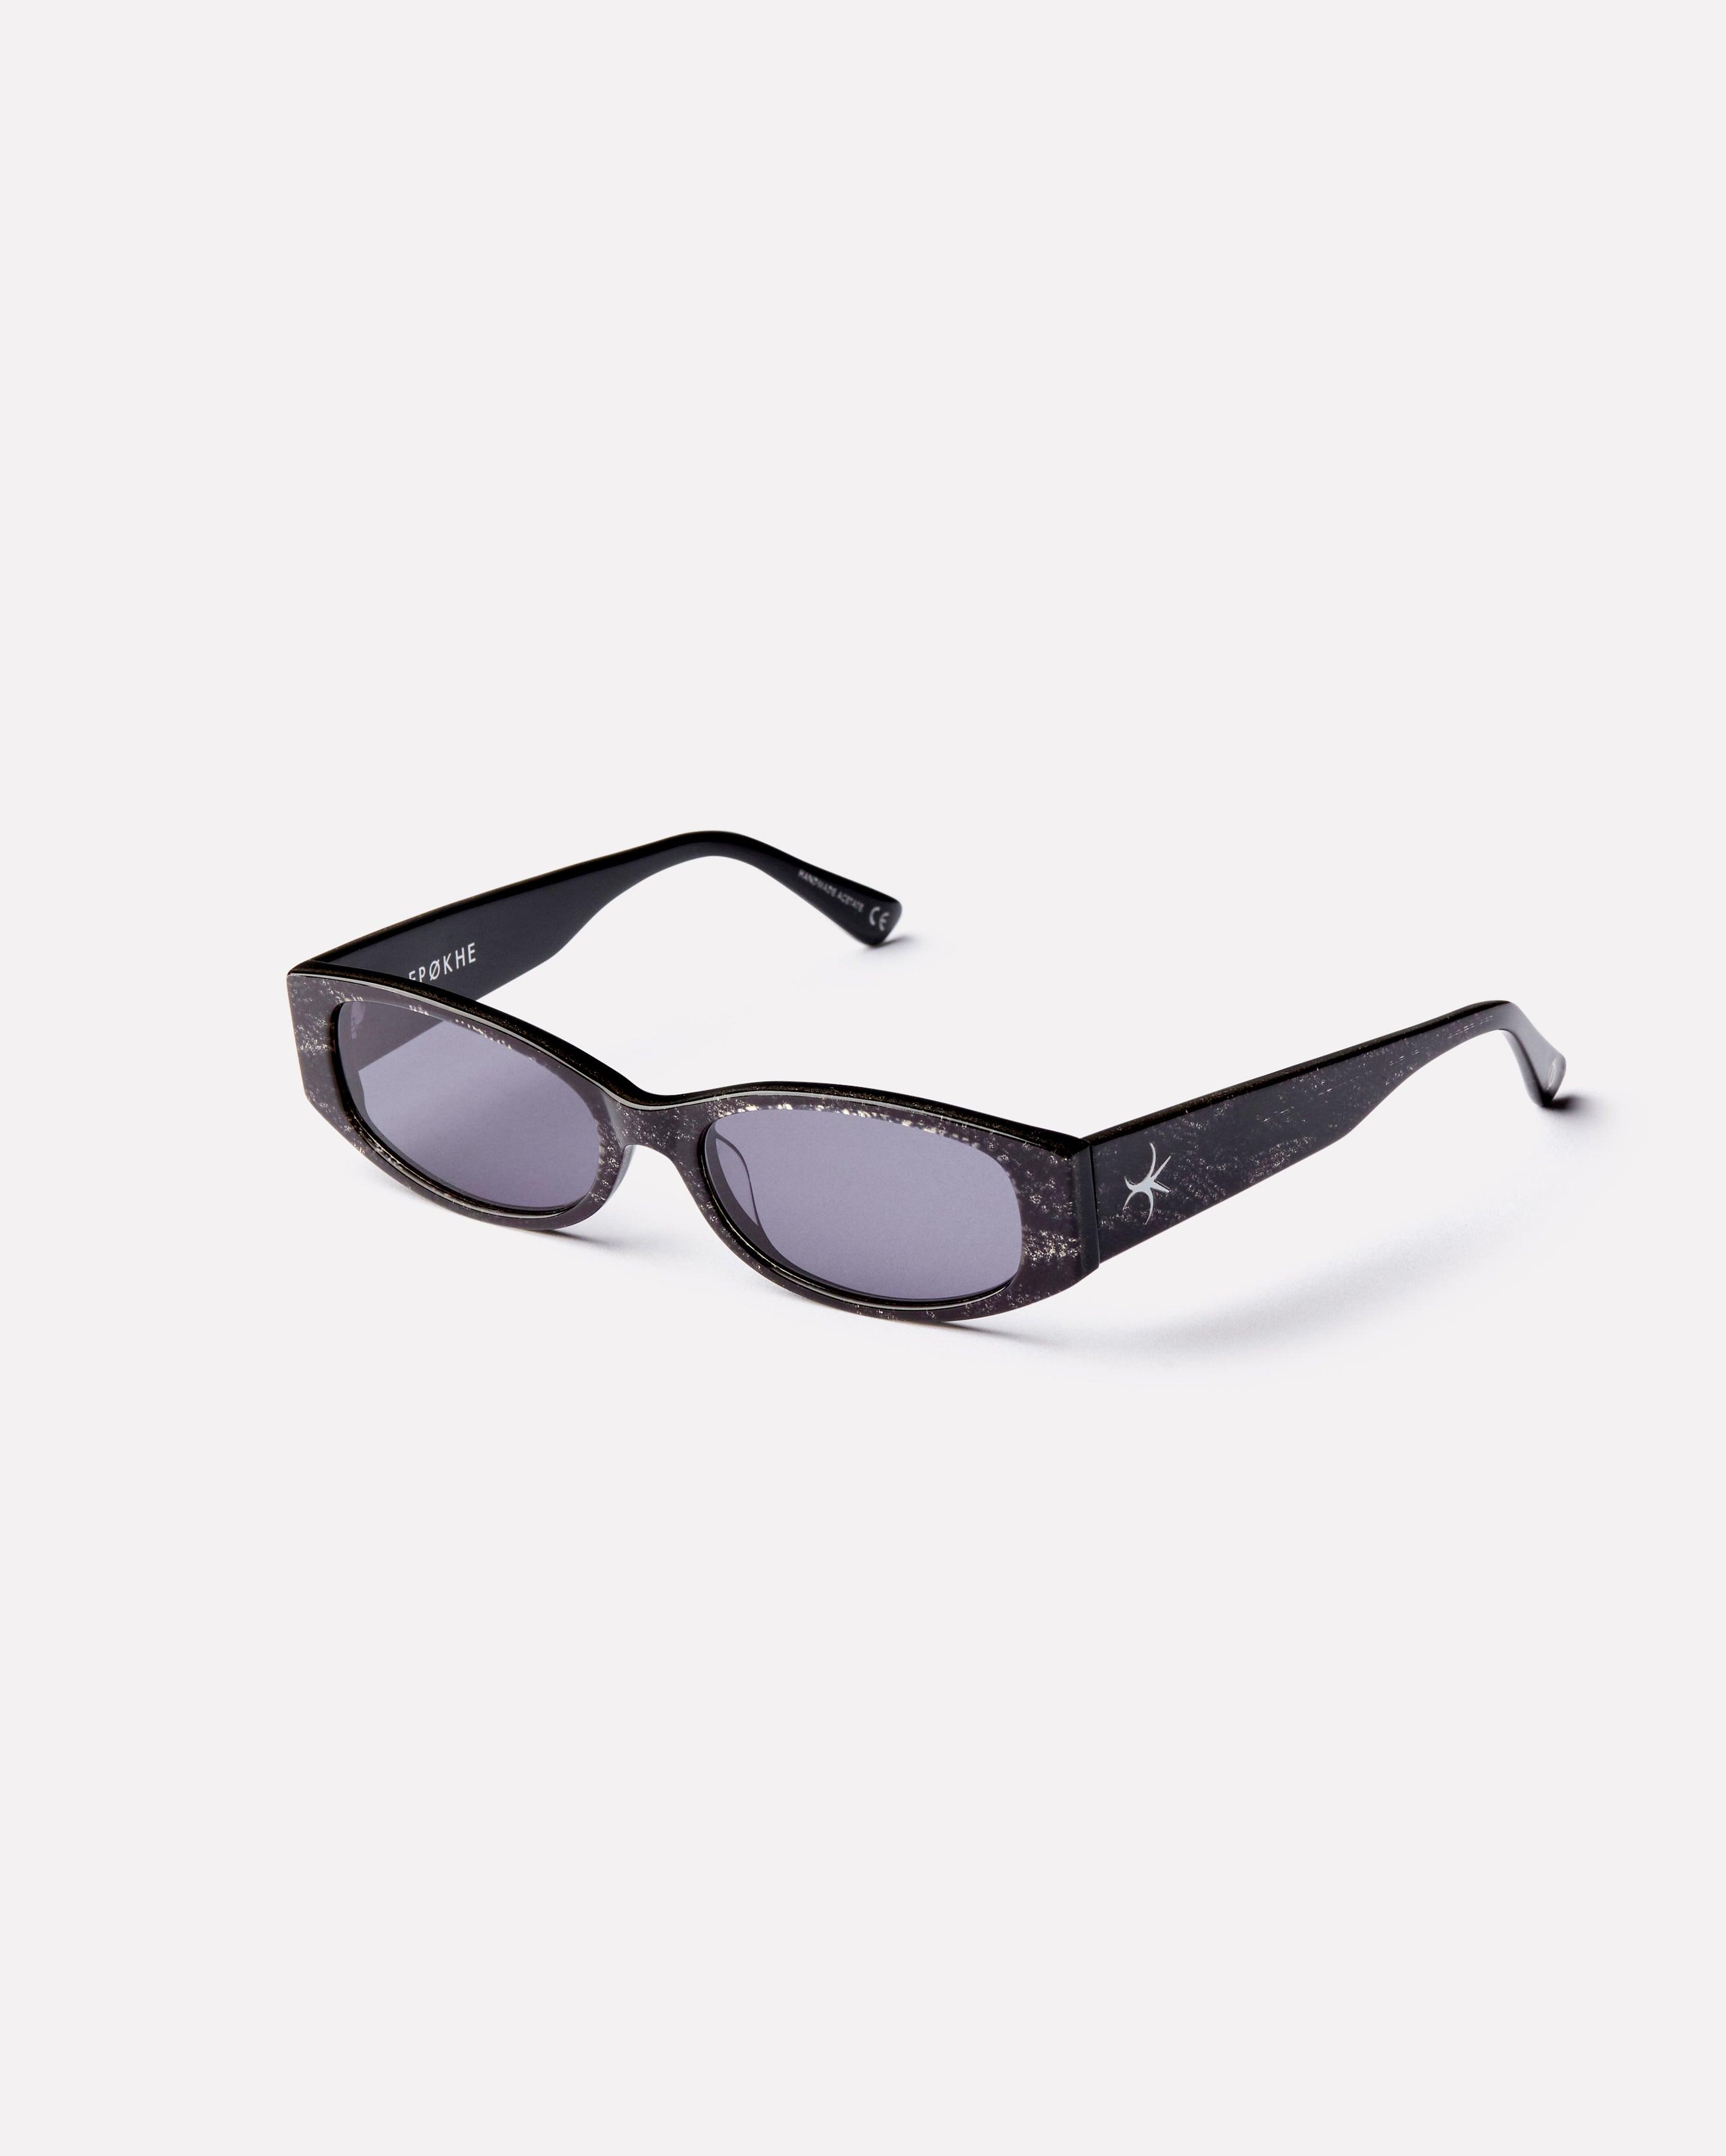 Machina - Anthracite Polished / Black - Sunglasses - EPOKHE EYEWEAR